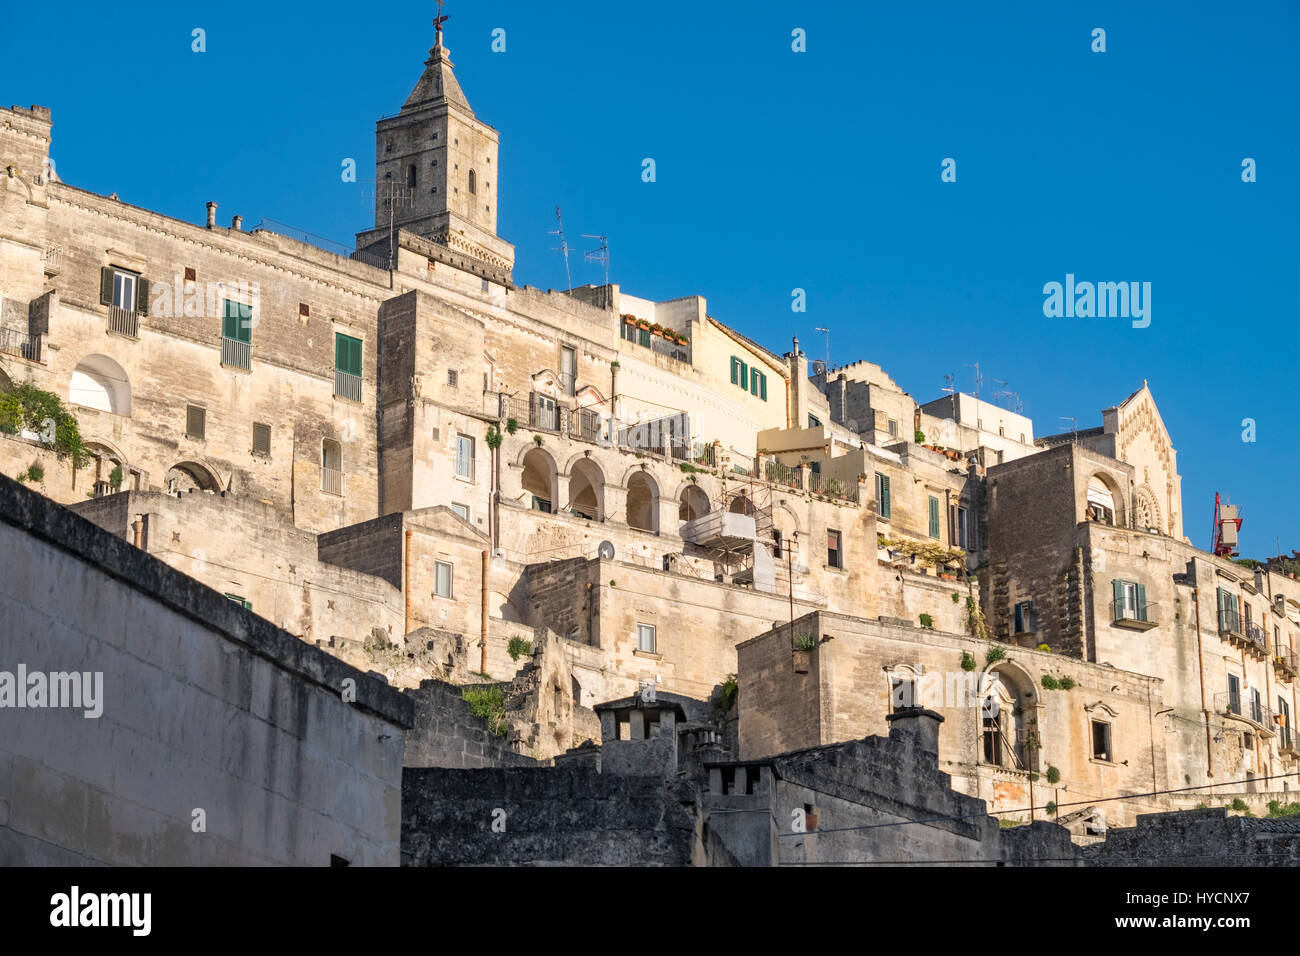 La città di Matera, Italia, al tramonto. Sito del Patrimonio Mondiale e capitale europea della cultura per il 2019 Foto Stock